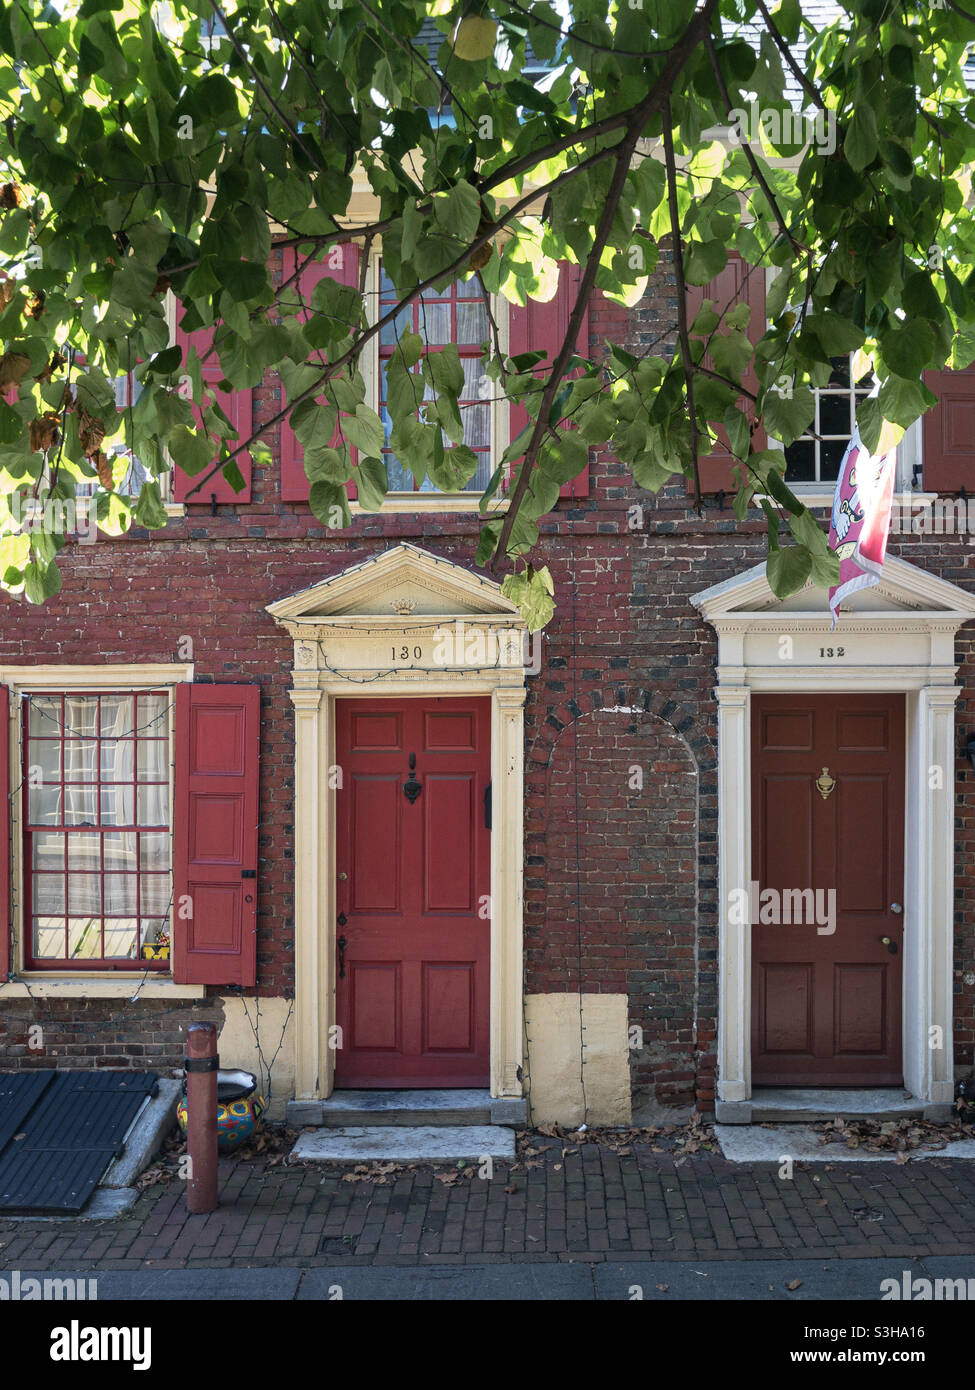 Historische Straße Elfreth's Alley in Philadelphia, im Old City Viertel gelegen Stockfoto